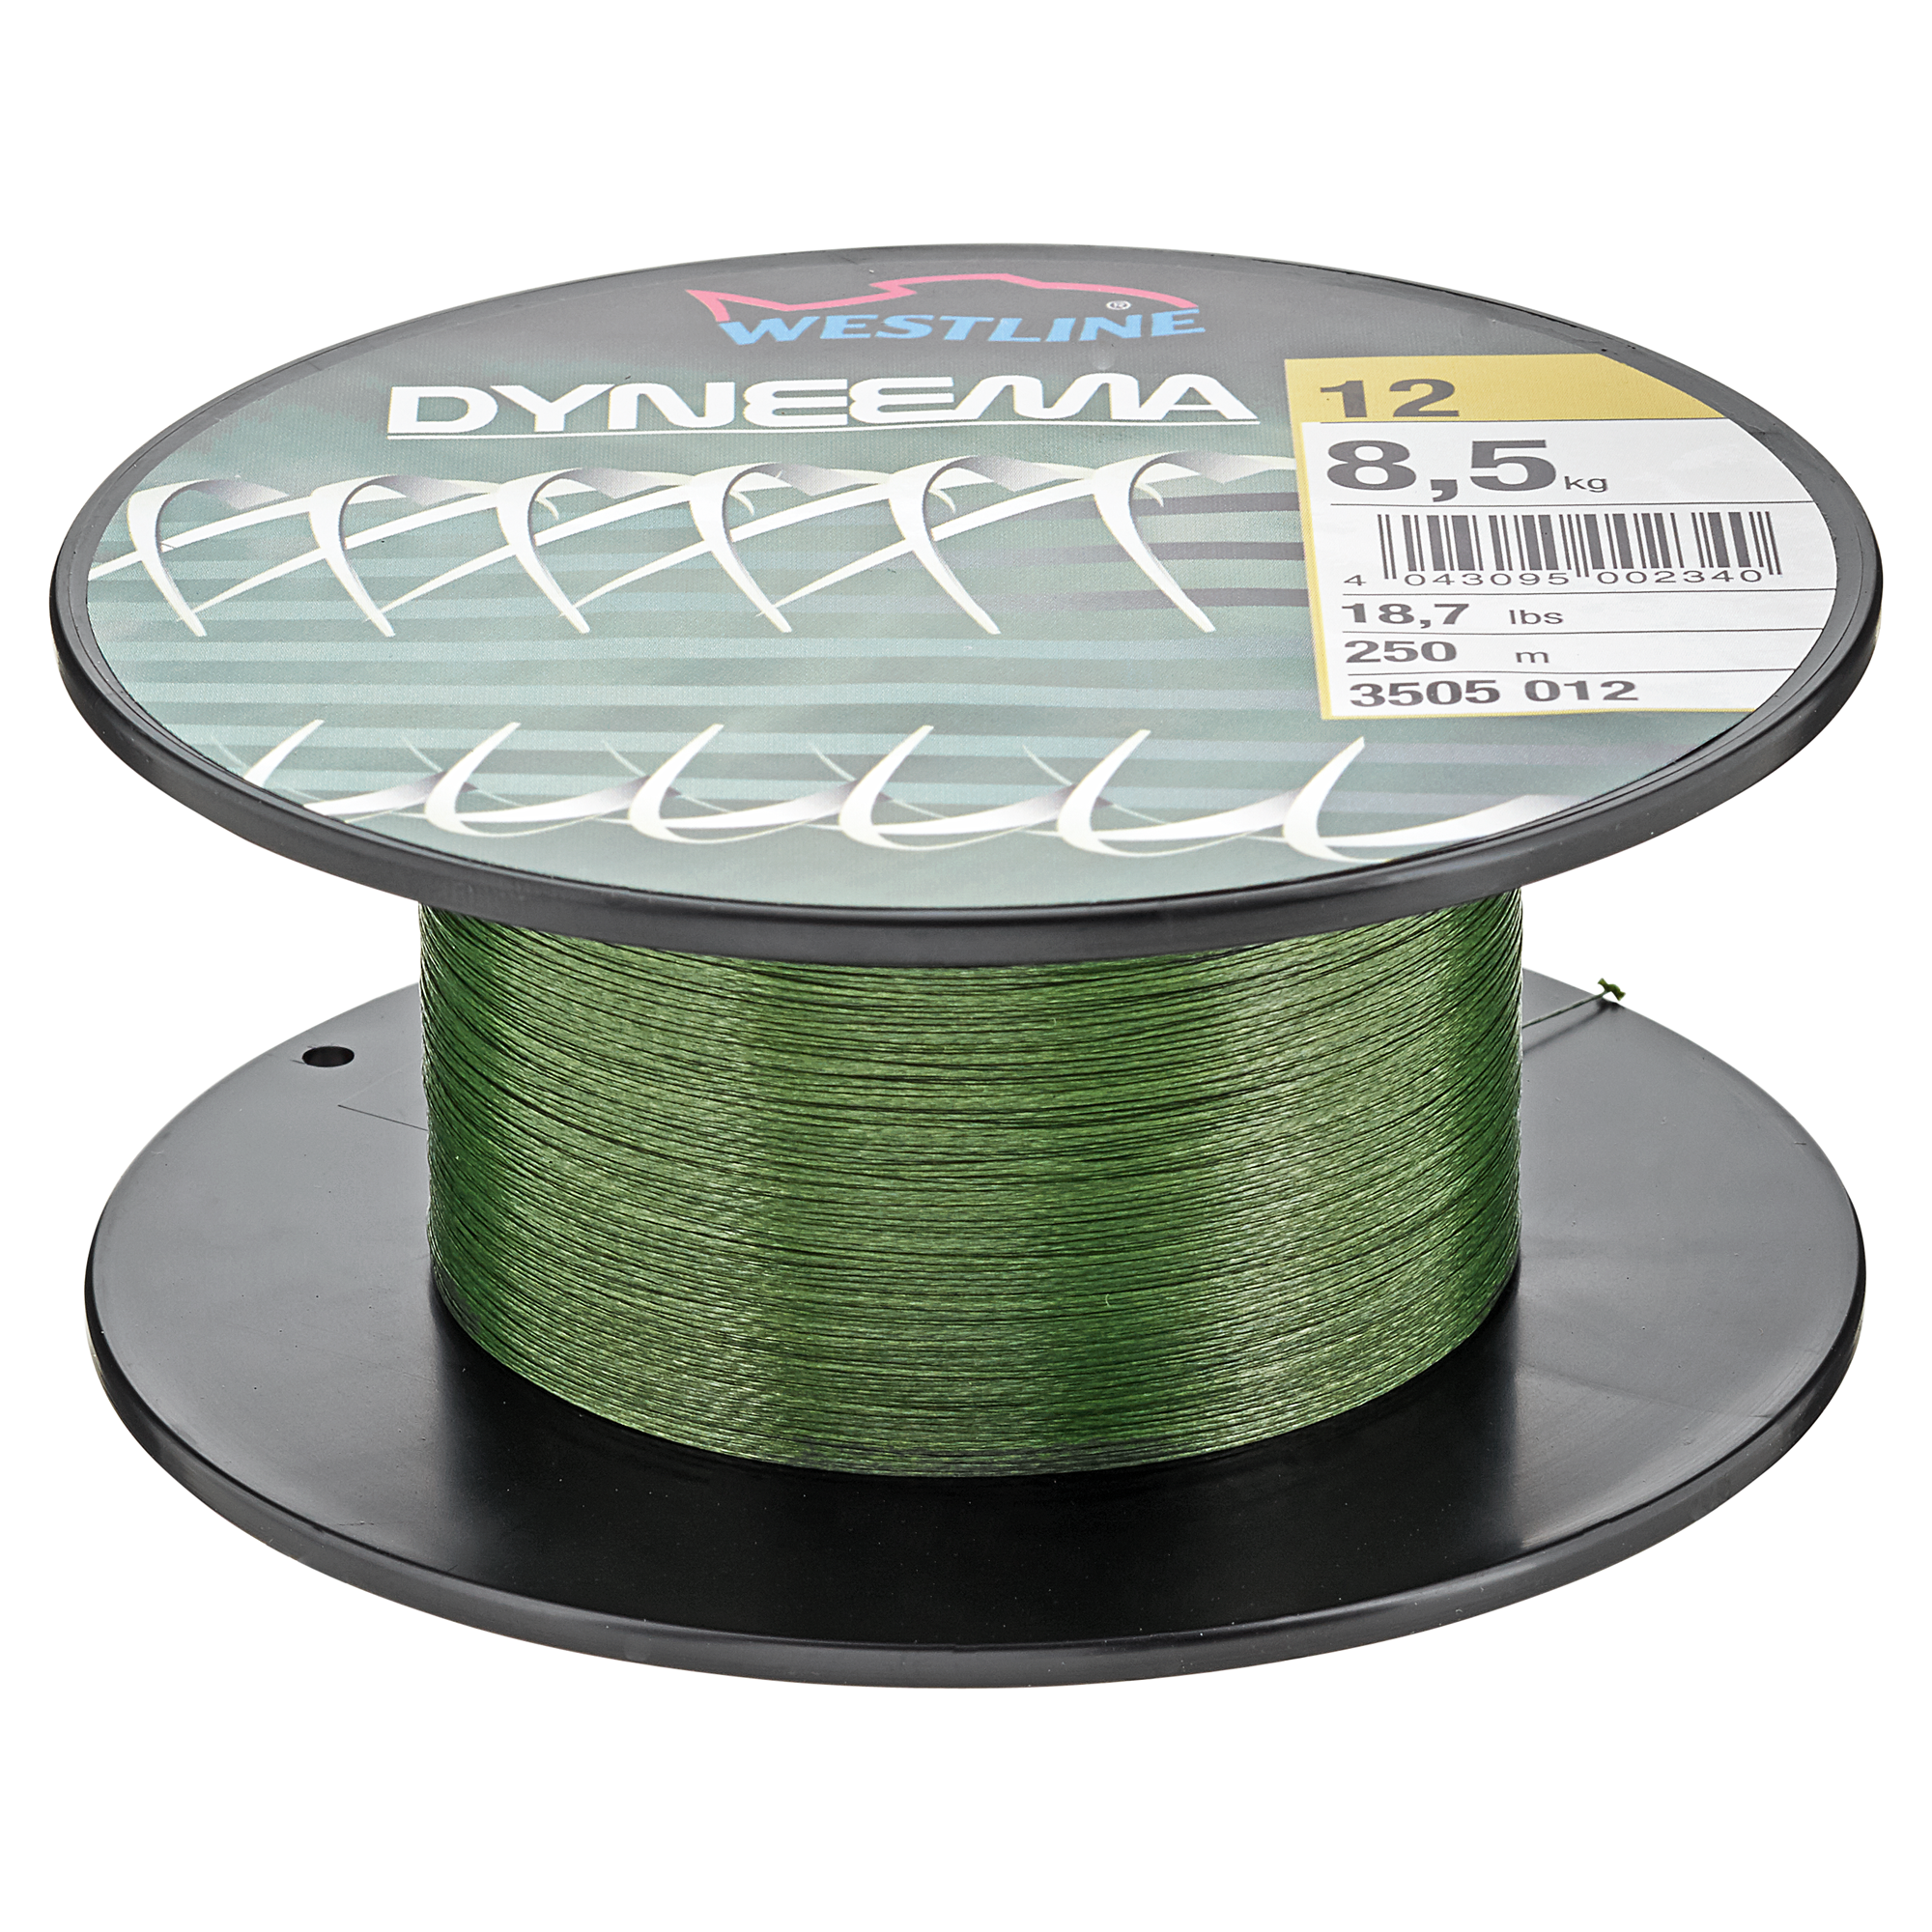 Angelschnur "Dyneema" grün 8,5 kg 250 m + product picture